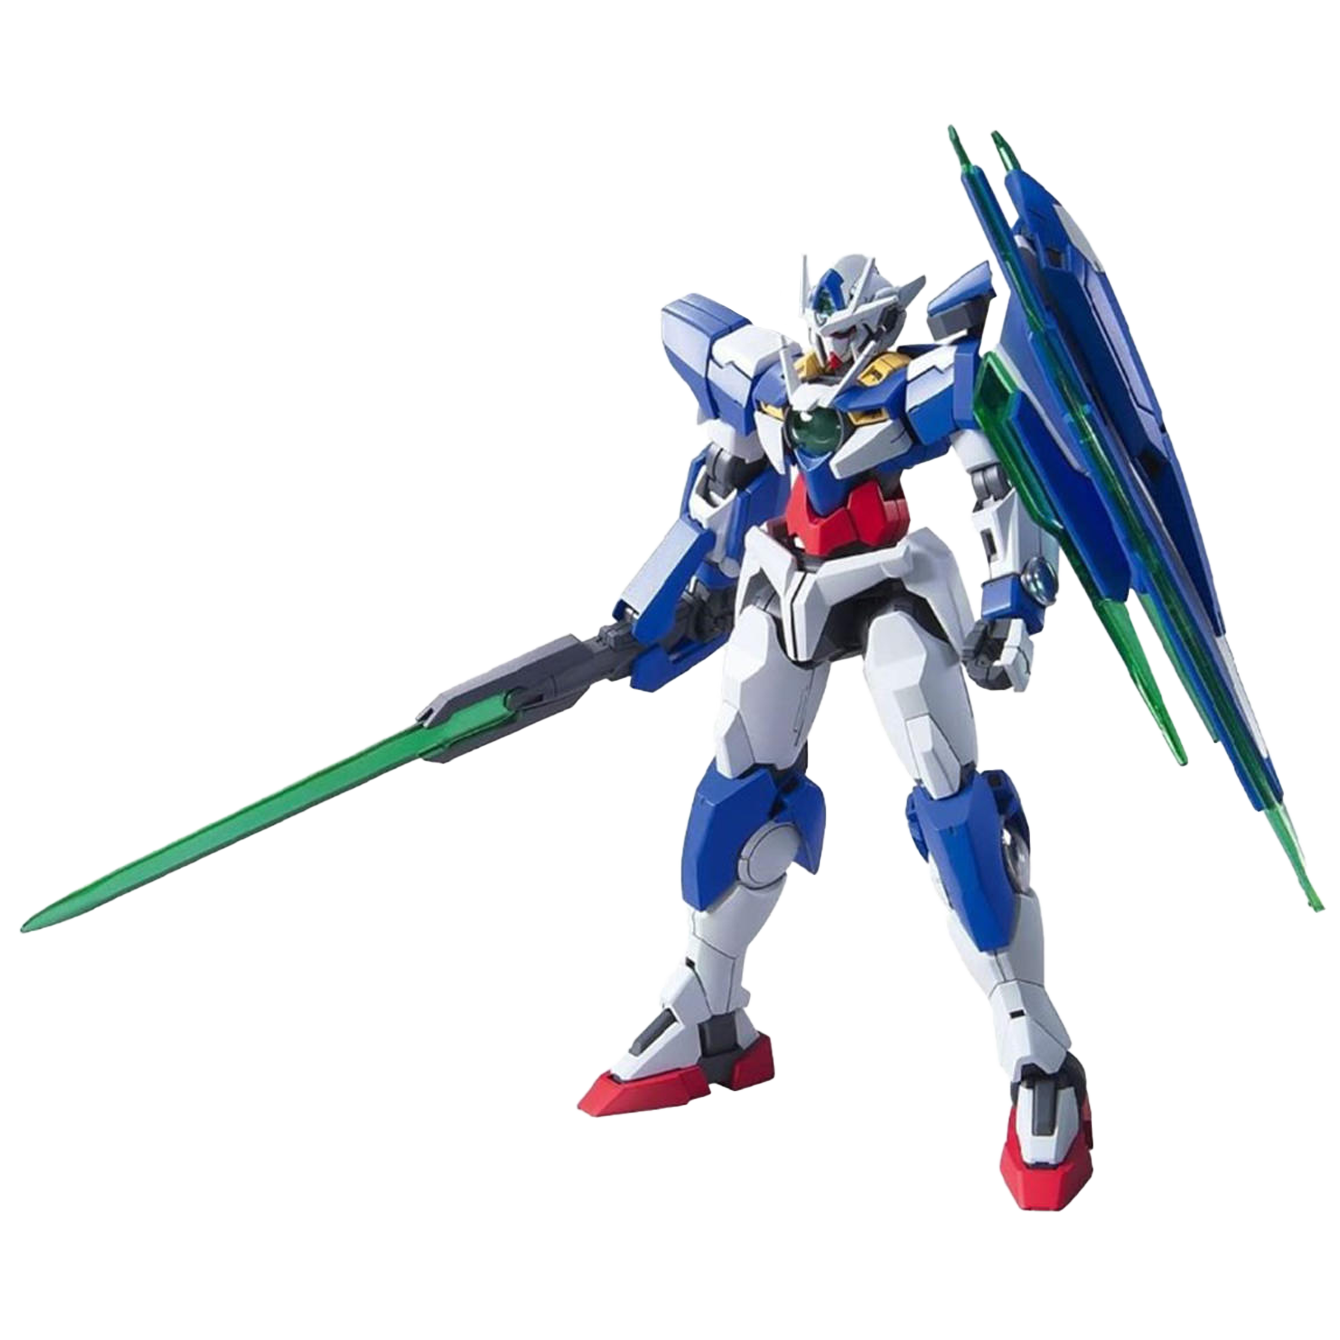 Bandai Spirits RG 21 00 QANT Gundam 1/144